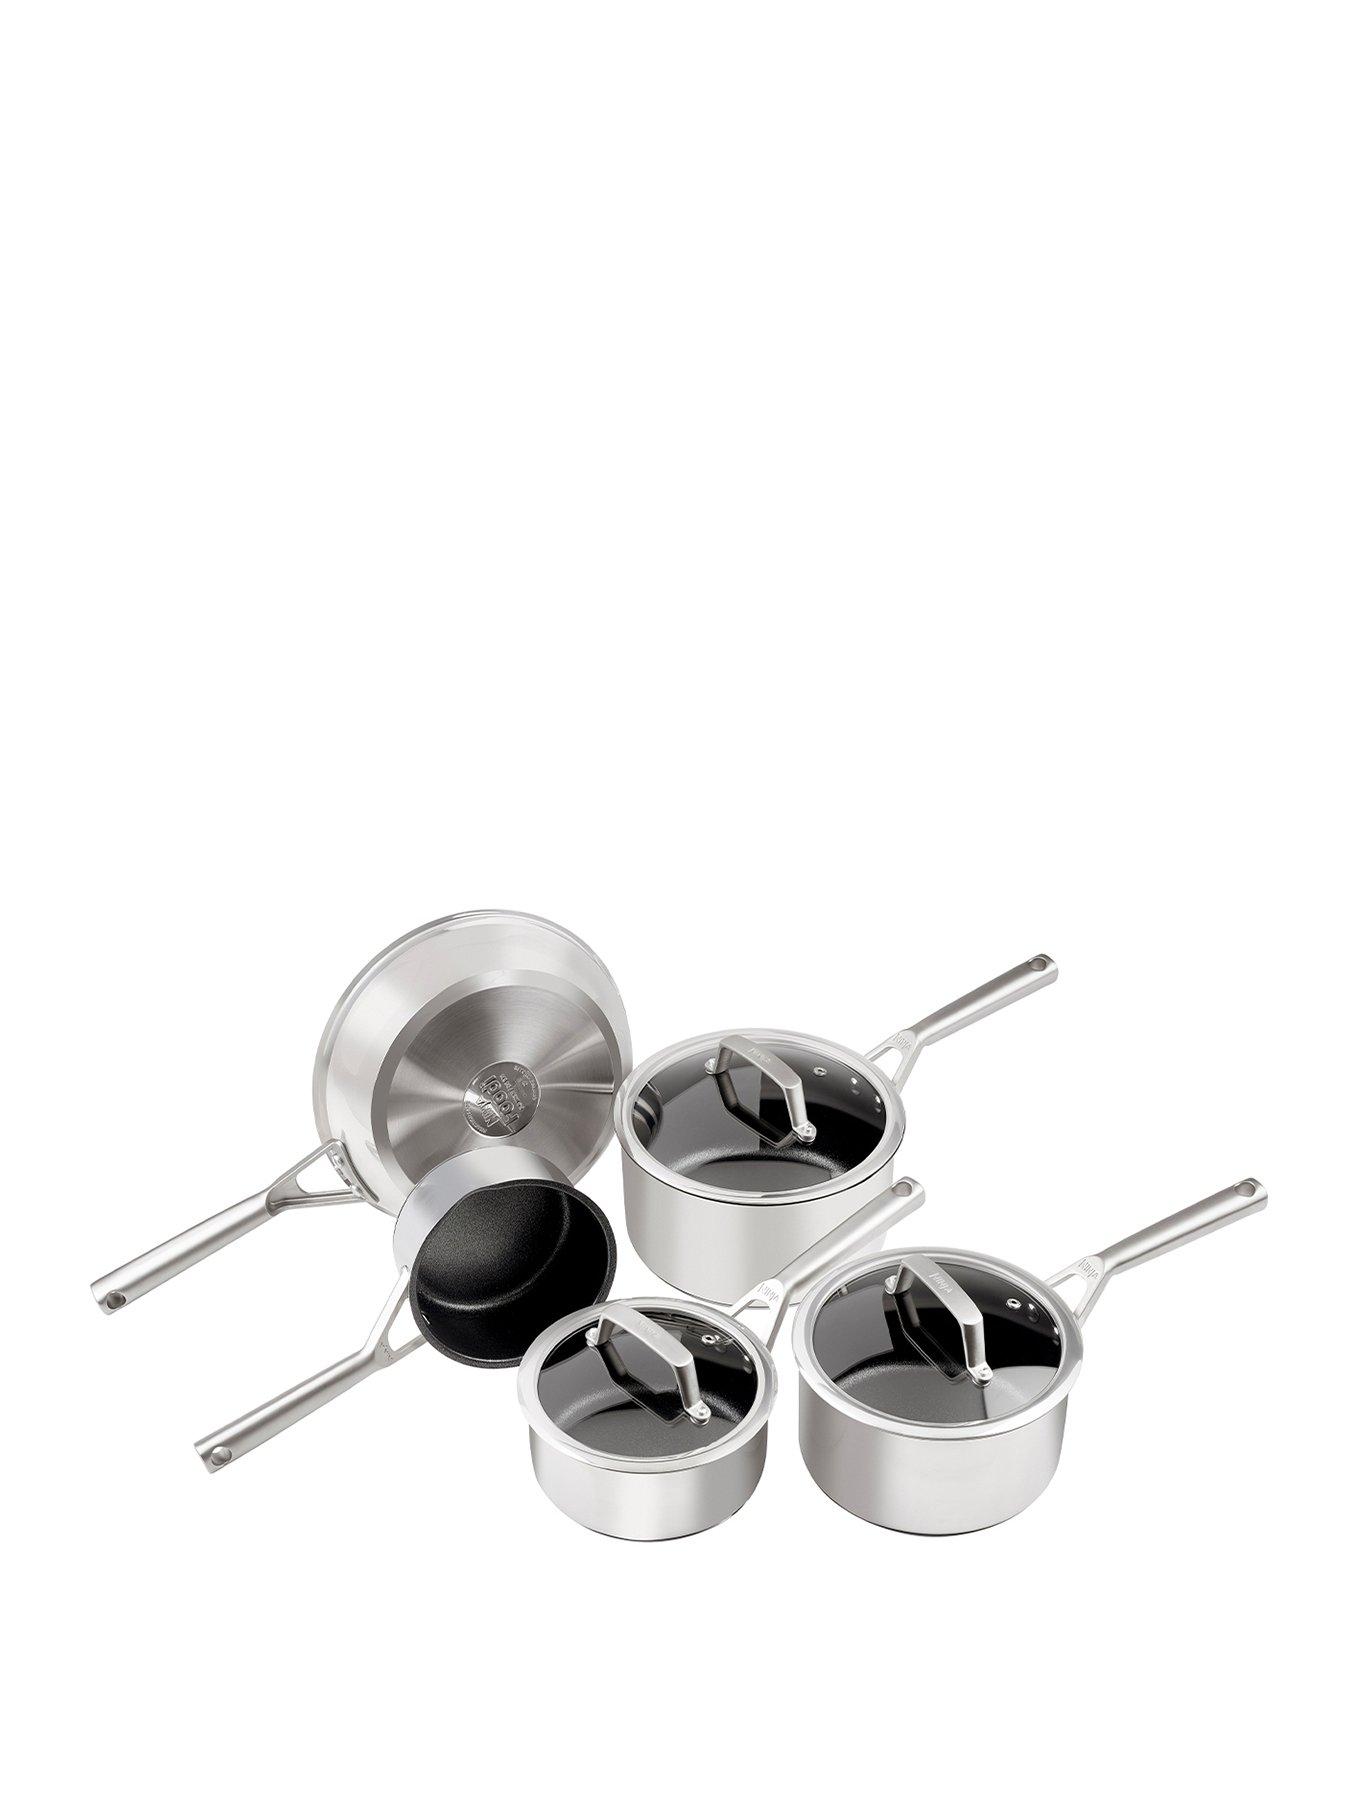 Ninja Foodi ZEROSTICK 5-Piece Pan Set, [C35000UK] Hard Anodised Aluminium,  Non-Stick, Induction Compatible, Dishwasher Safe